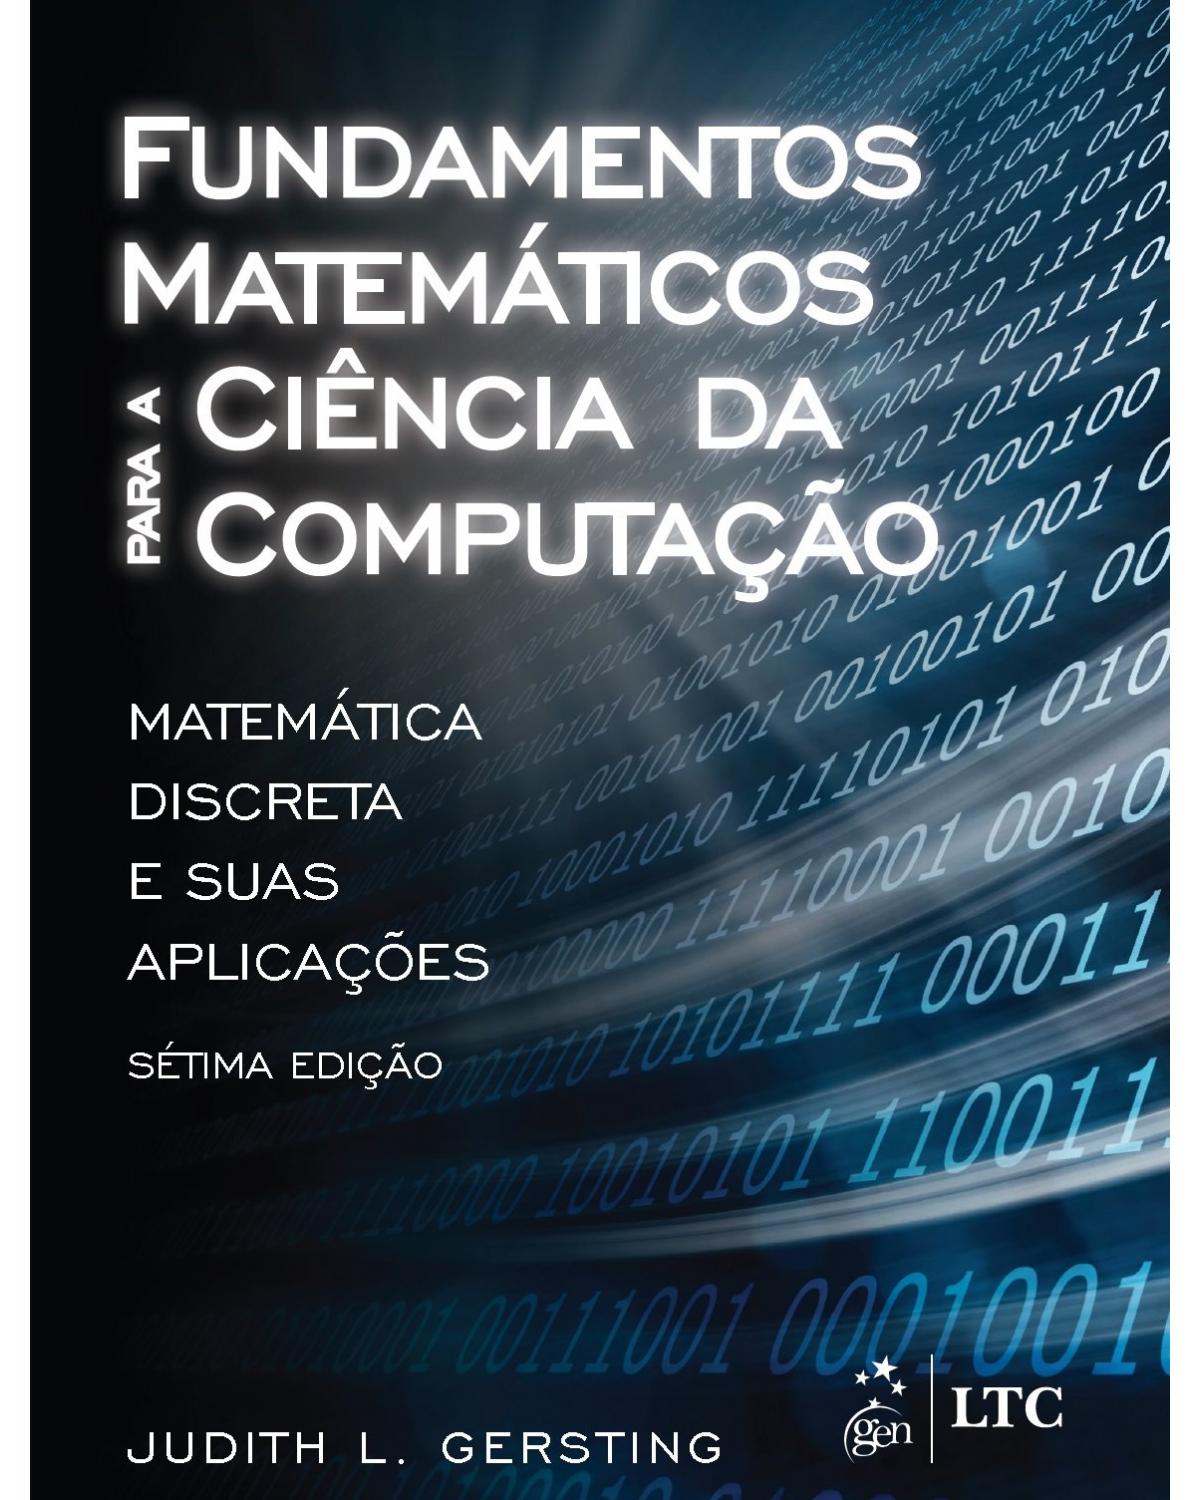 Fundamentos matemáticos para a ciência da computação - Matemática discreta e suas aplicações - 7ª Edição | 2017